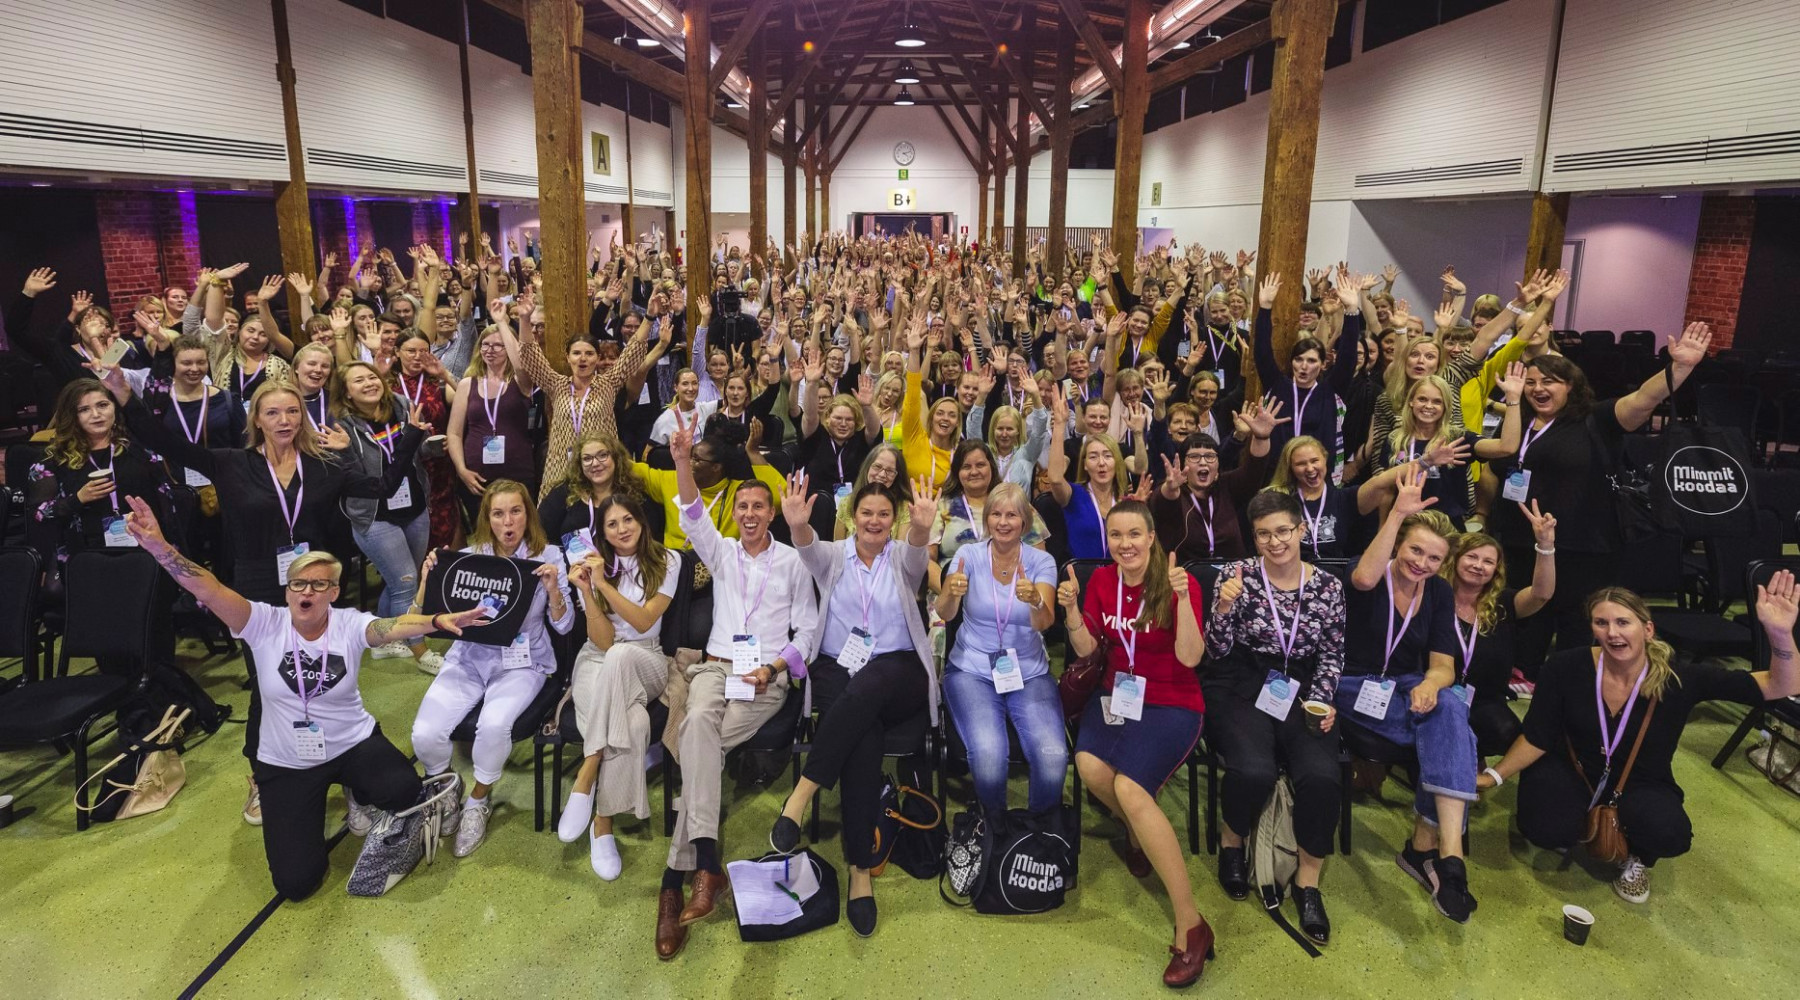 Unas doscientas personas, casi todas mujeres, posan en grupo en la gran sala donde acaba de celebrarse un taller.